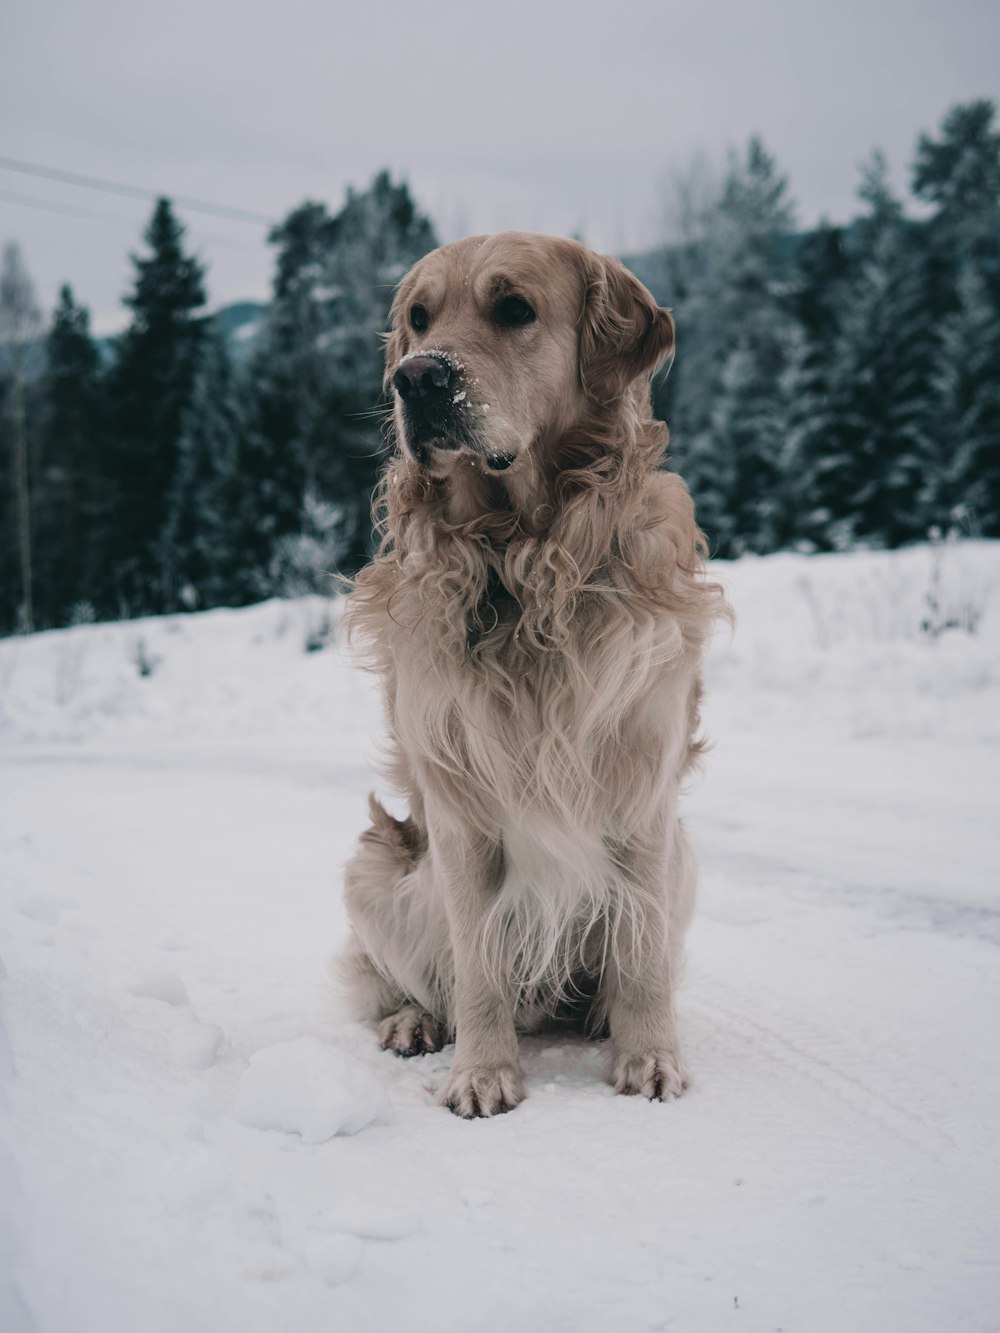 Perro marrón parado en la nieve cerca de árboles verdes